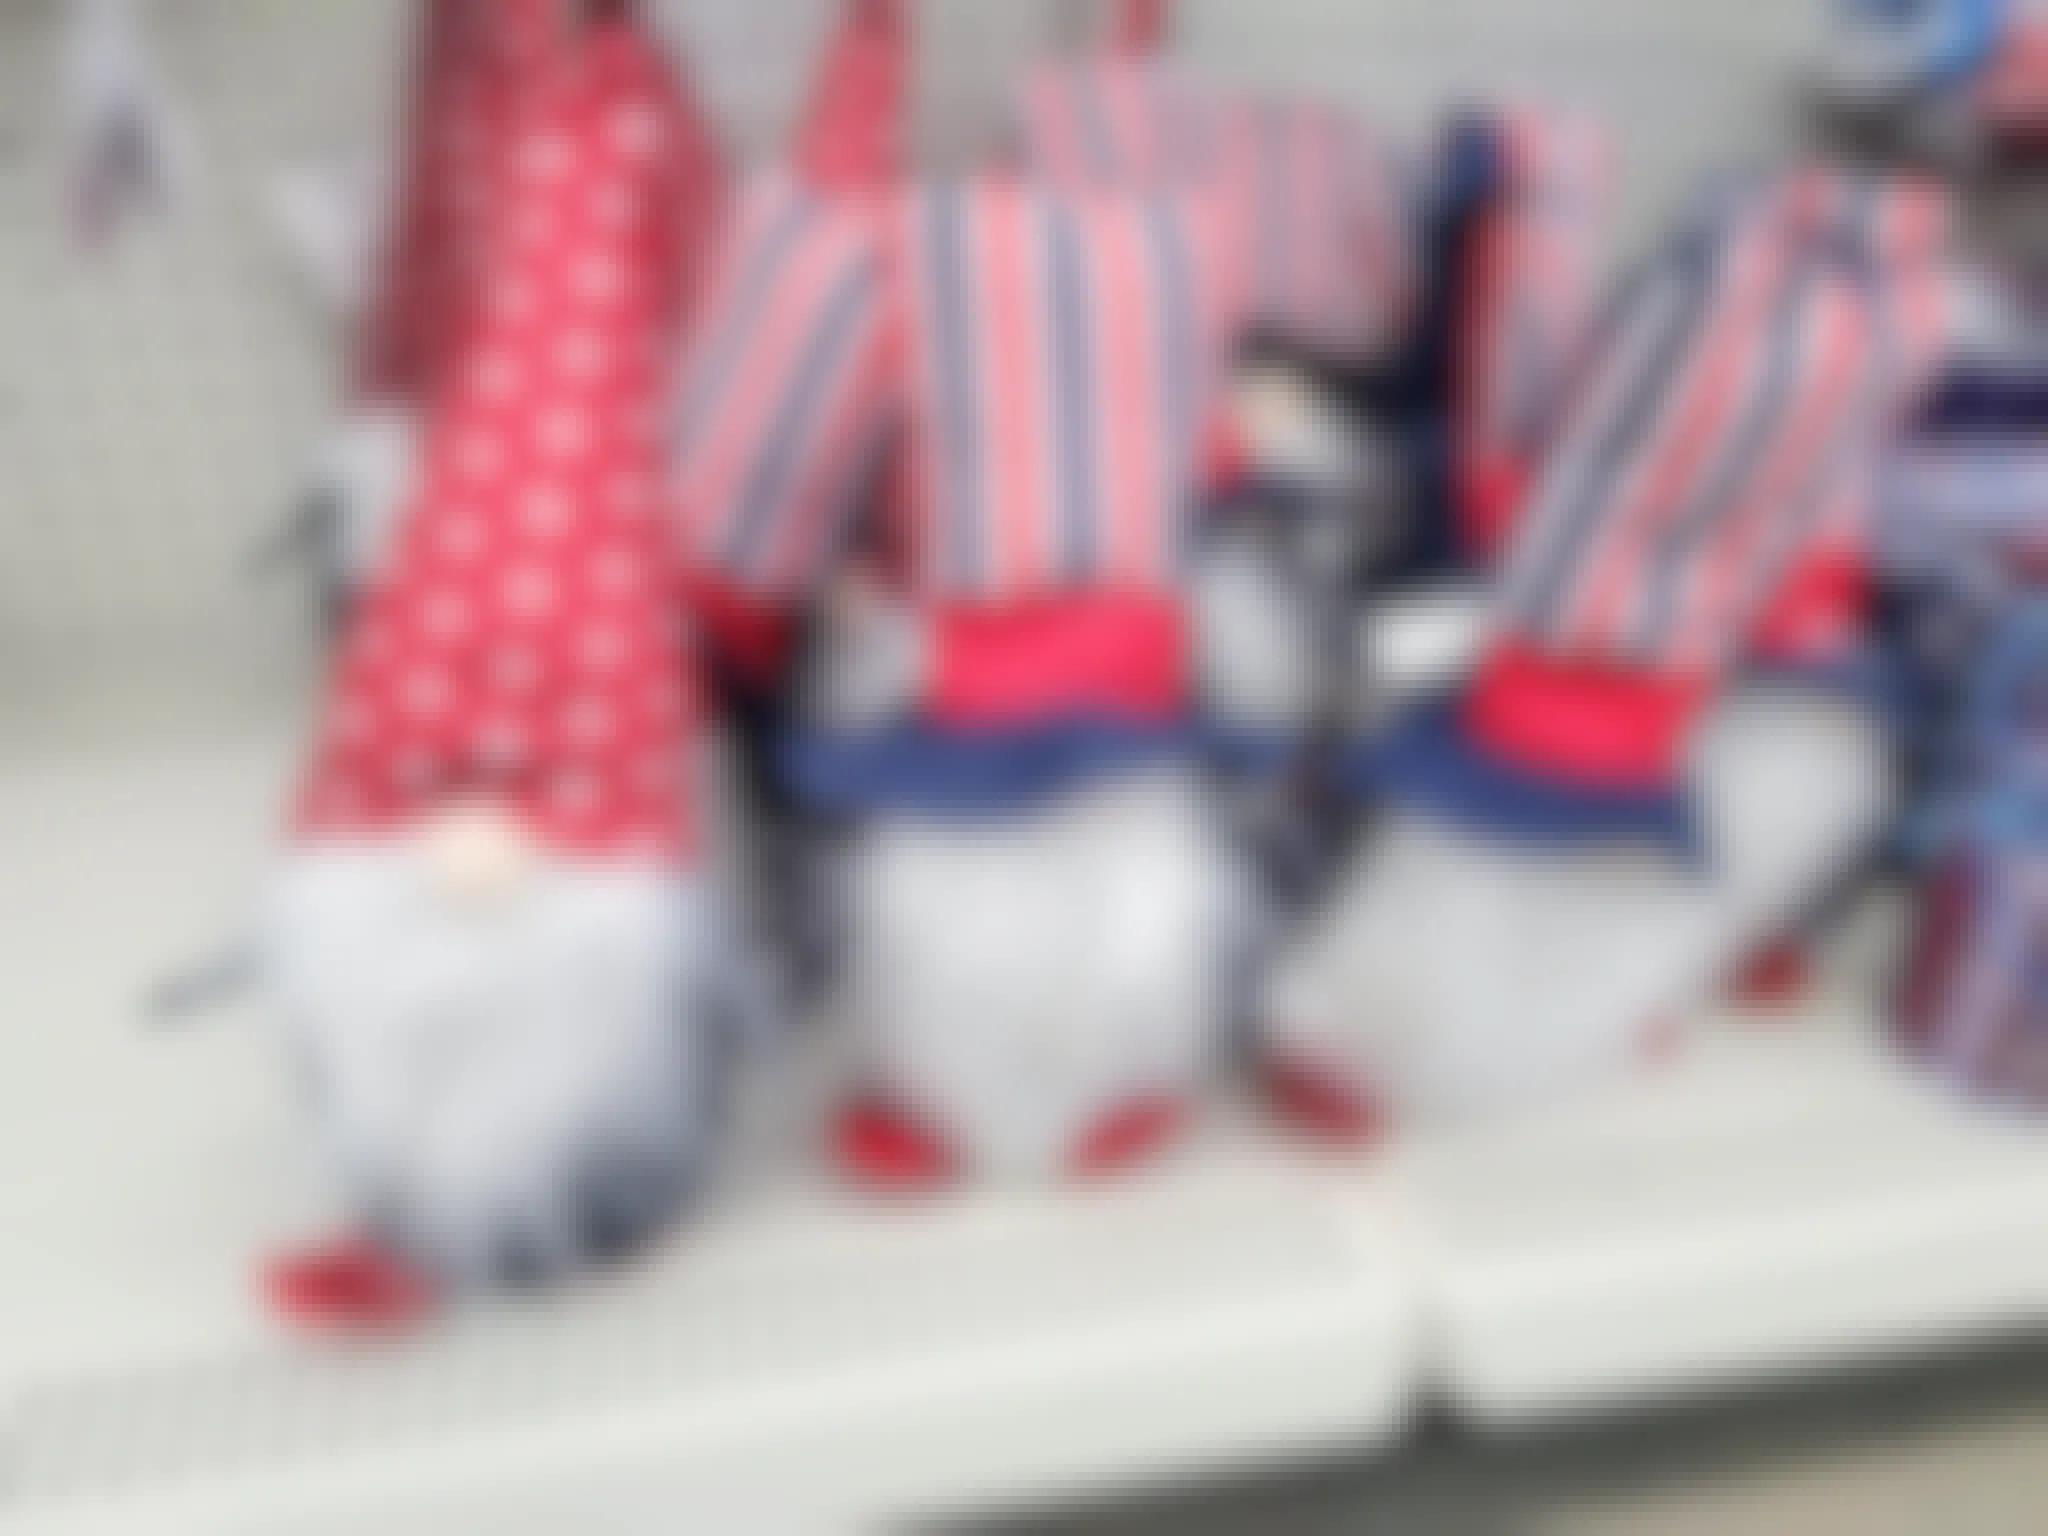 patriotic gnomes